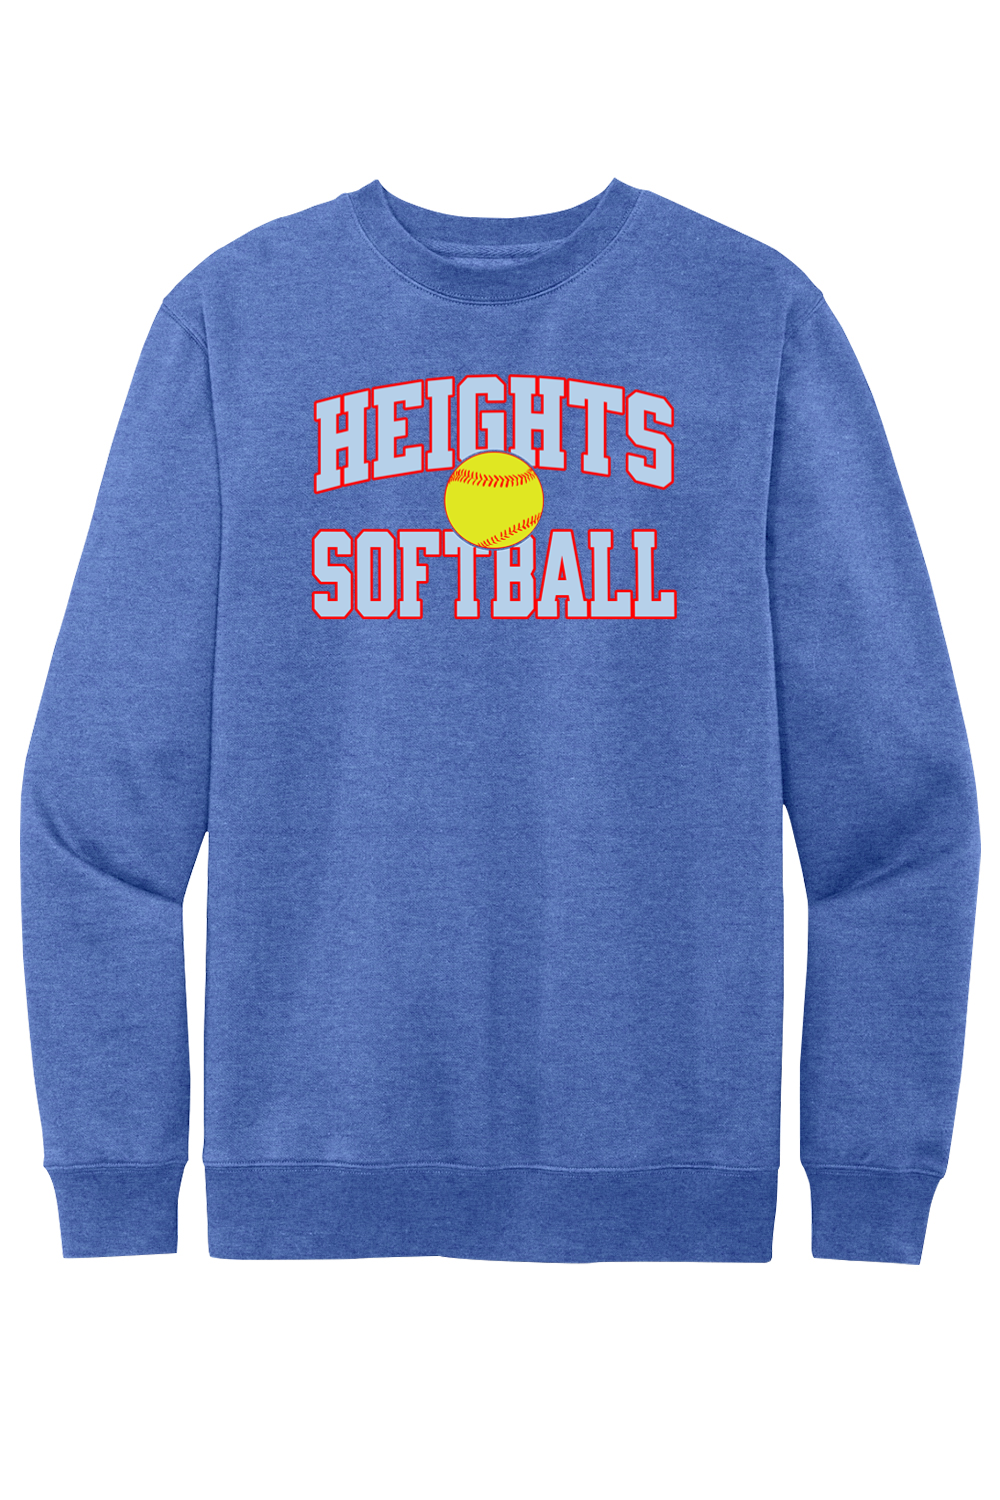 Heights Softball Block - Fleece Crewneck Sweatshirt - Yinzylvania